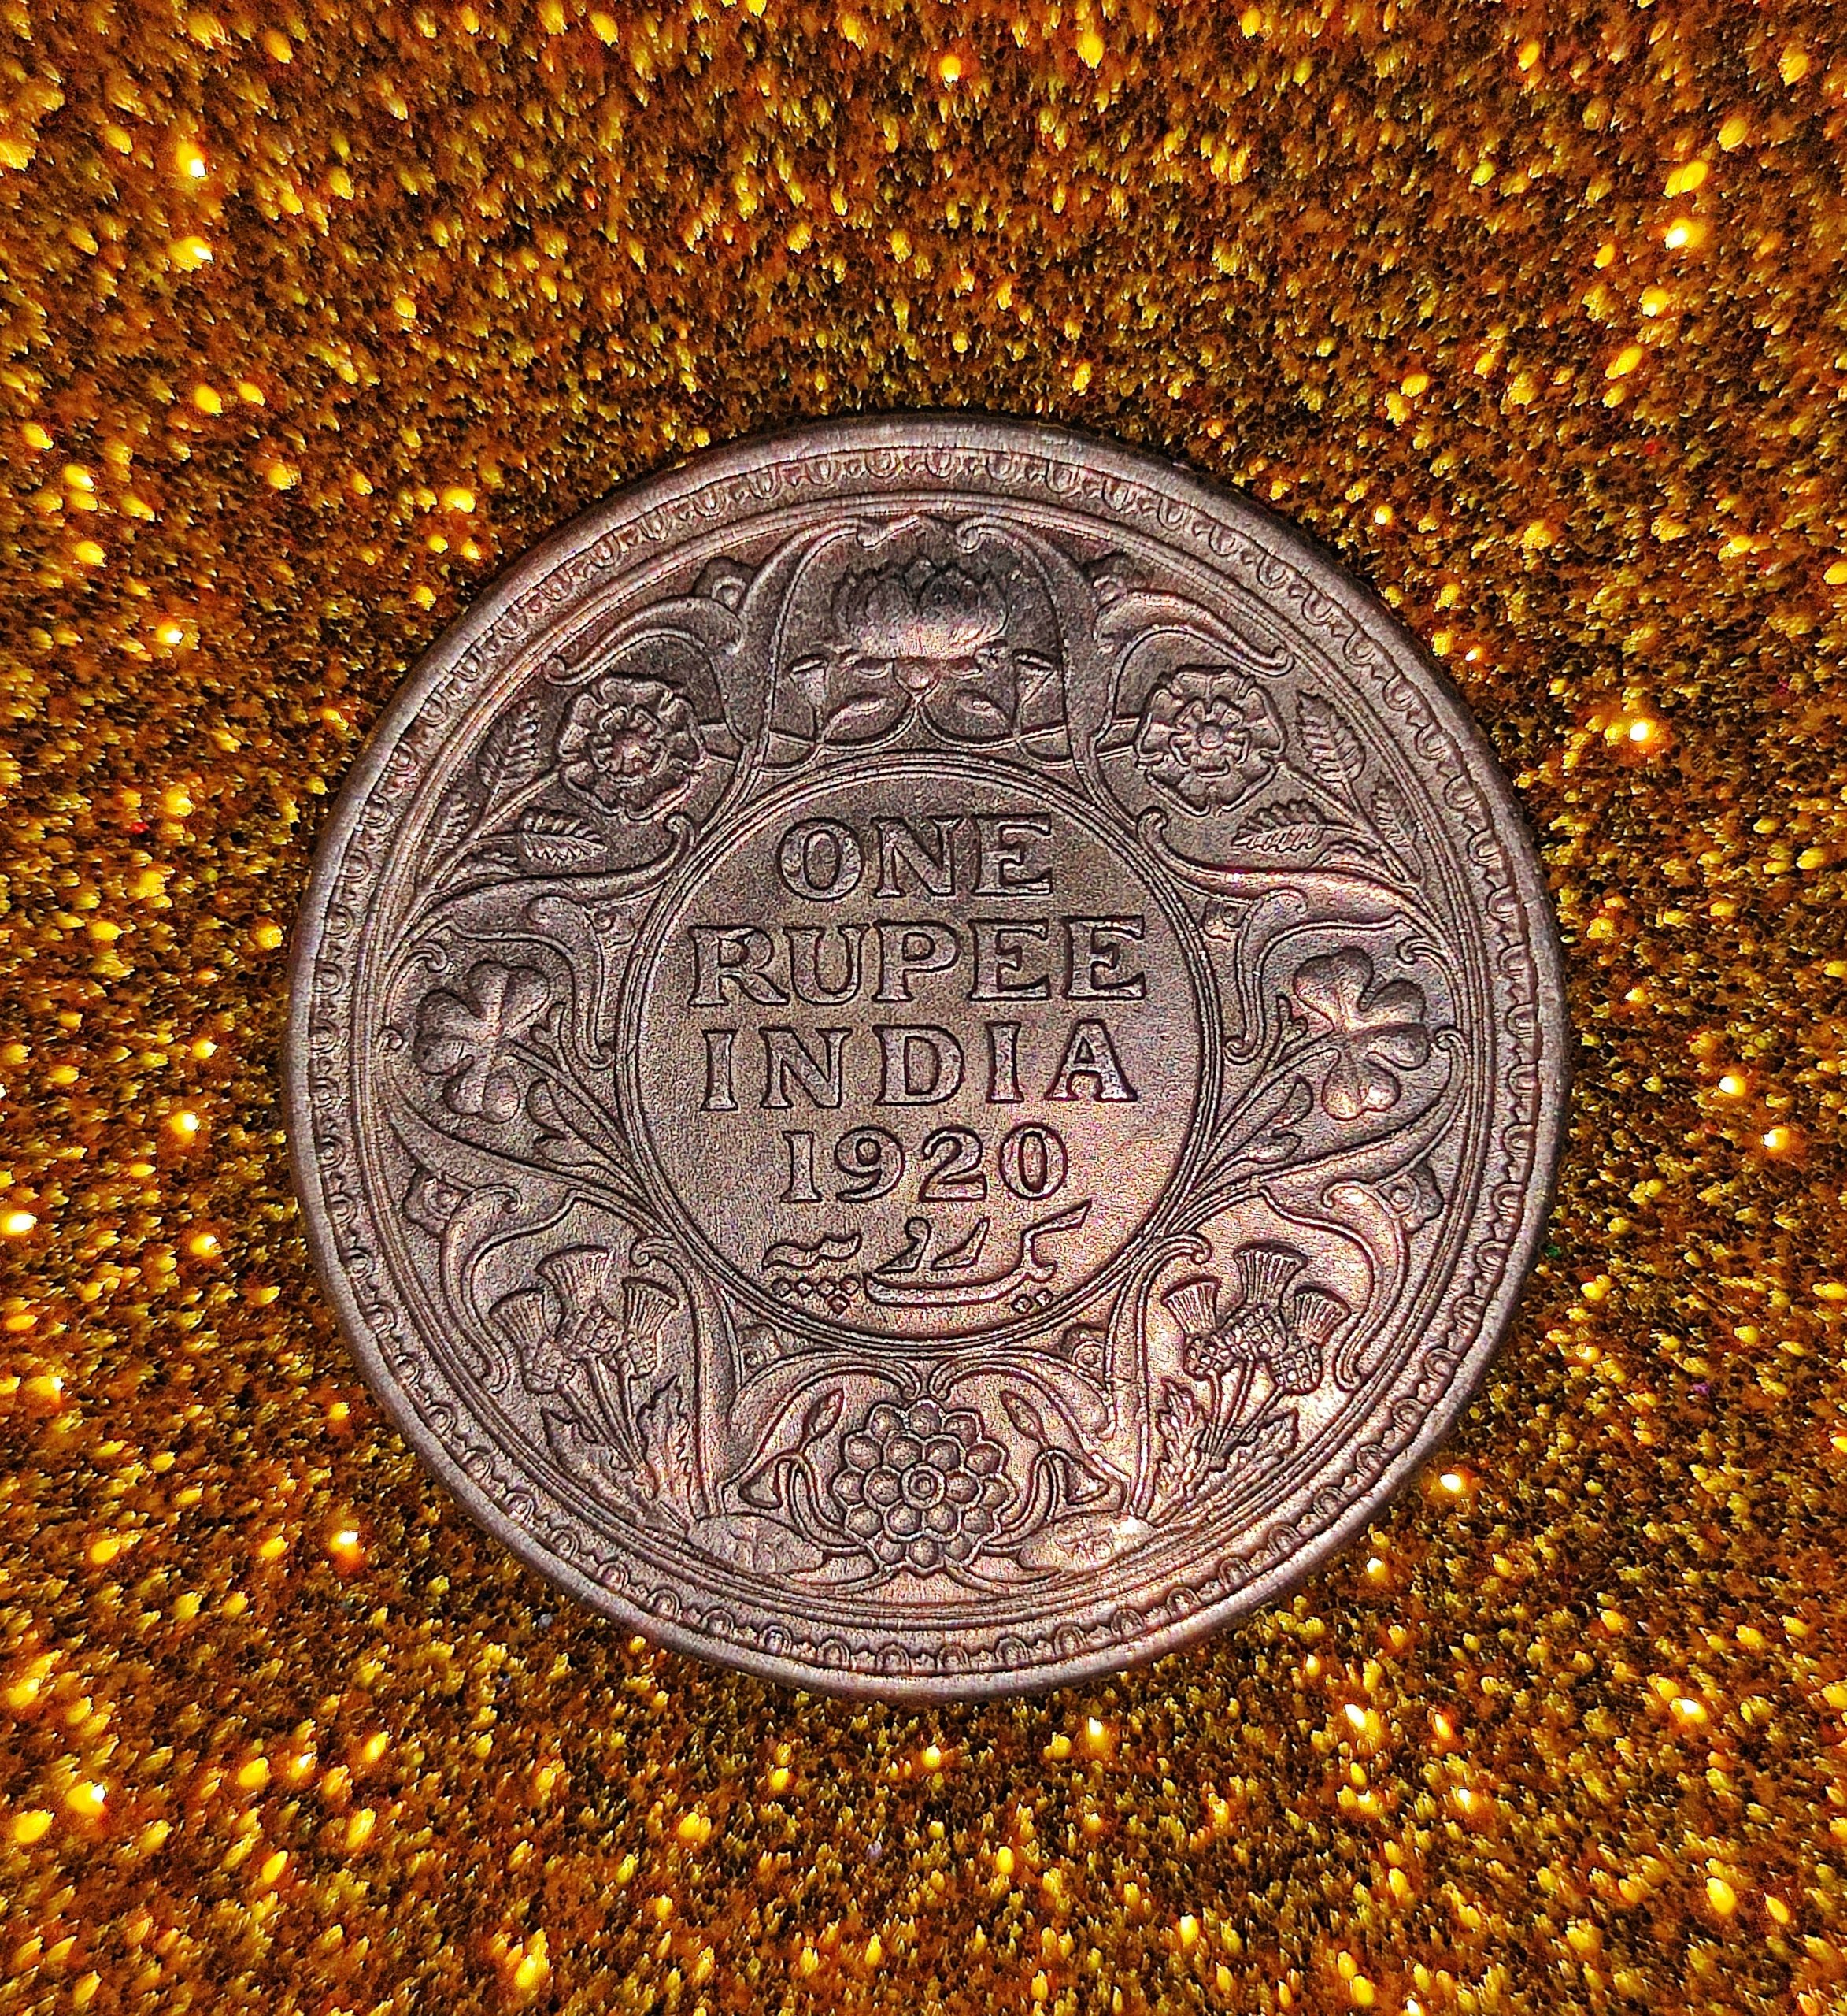 An antique silver coin